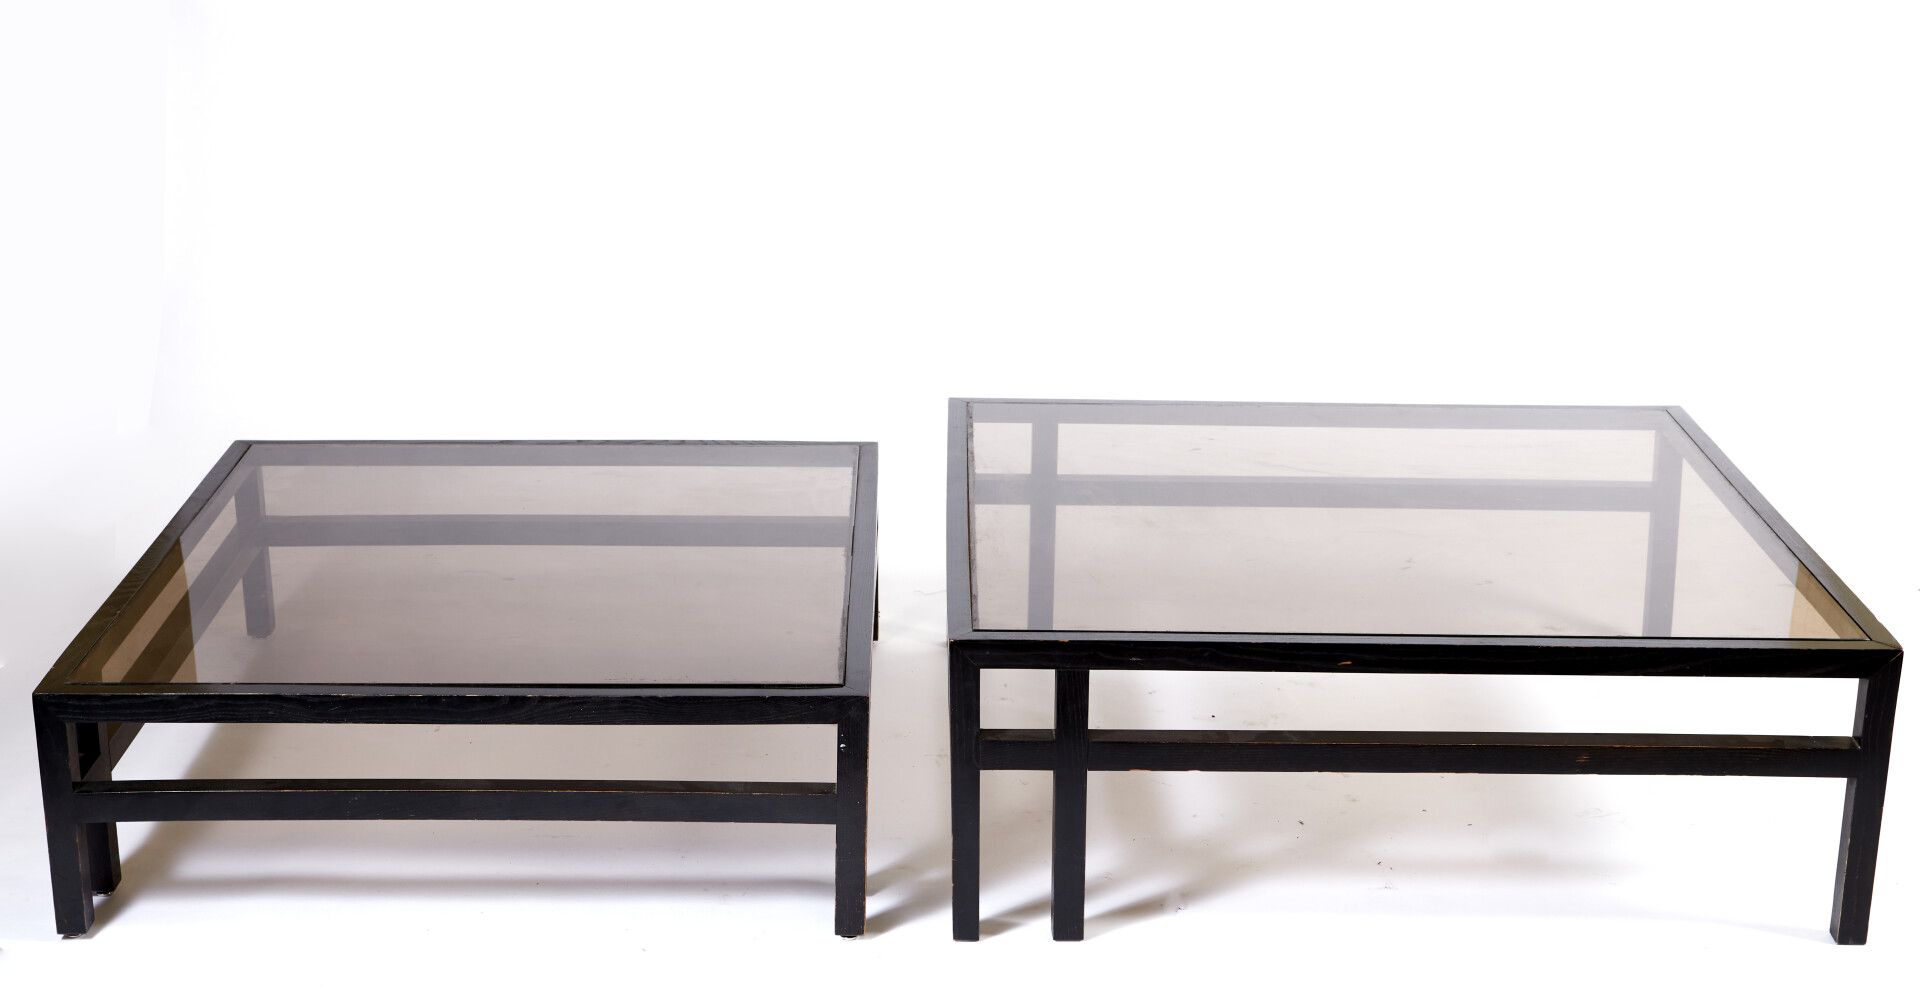 Null 让-米歇尔-维尔莫特 (生于1948年)

熏黑木质的方形嵌套咖啡桌。

烟熏玻璃顶。

100 x 100 cm

大约在1980年。

(轻微磨损&hellip;